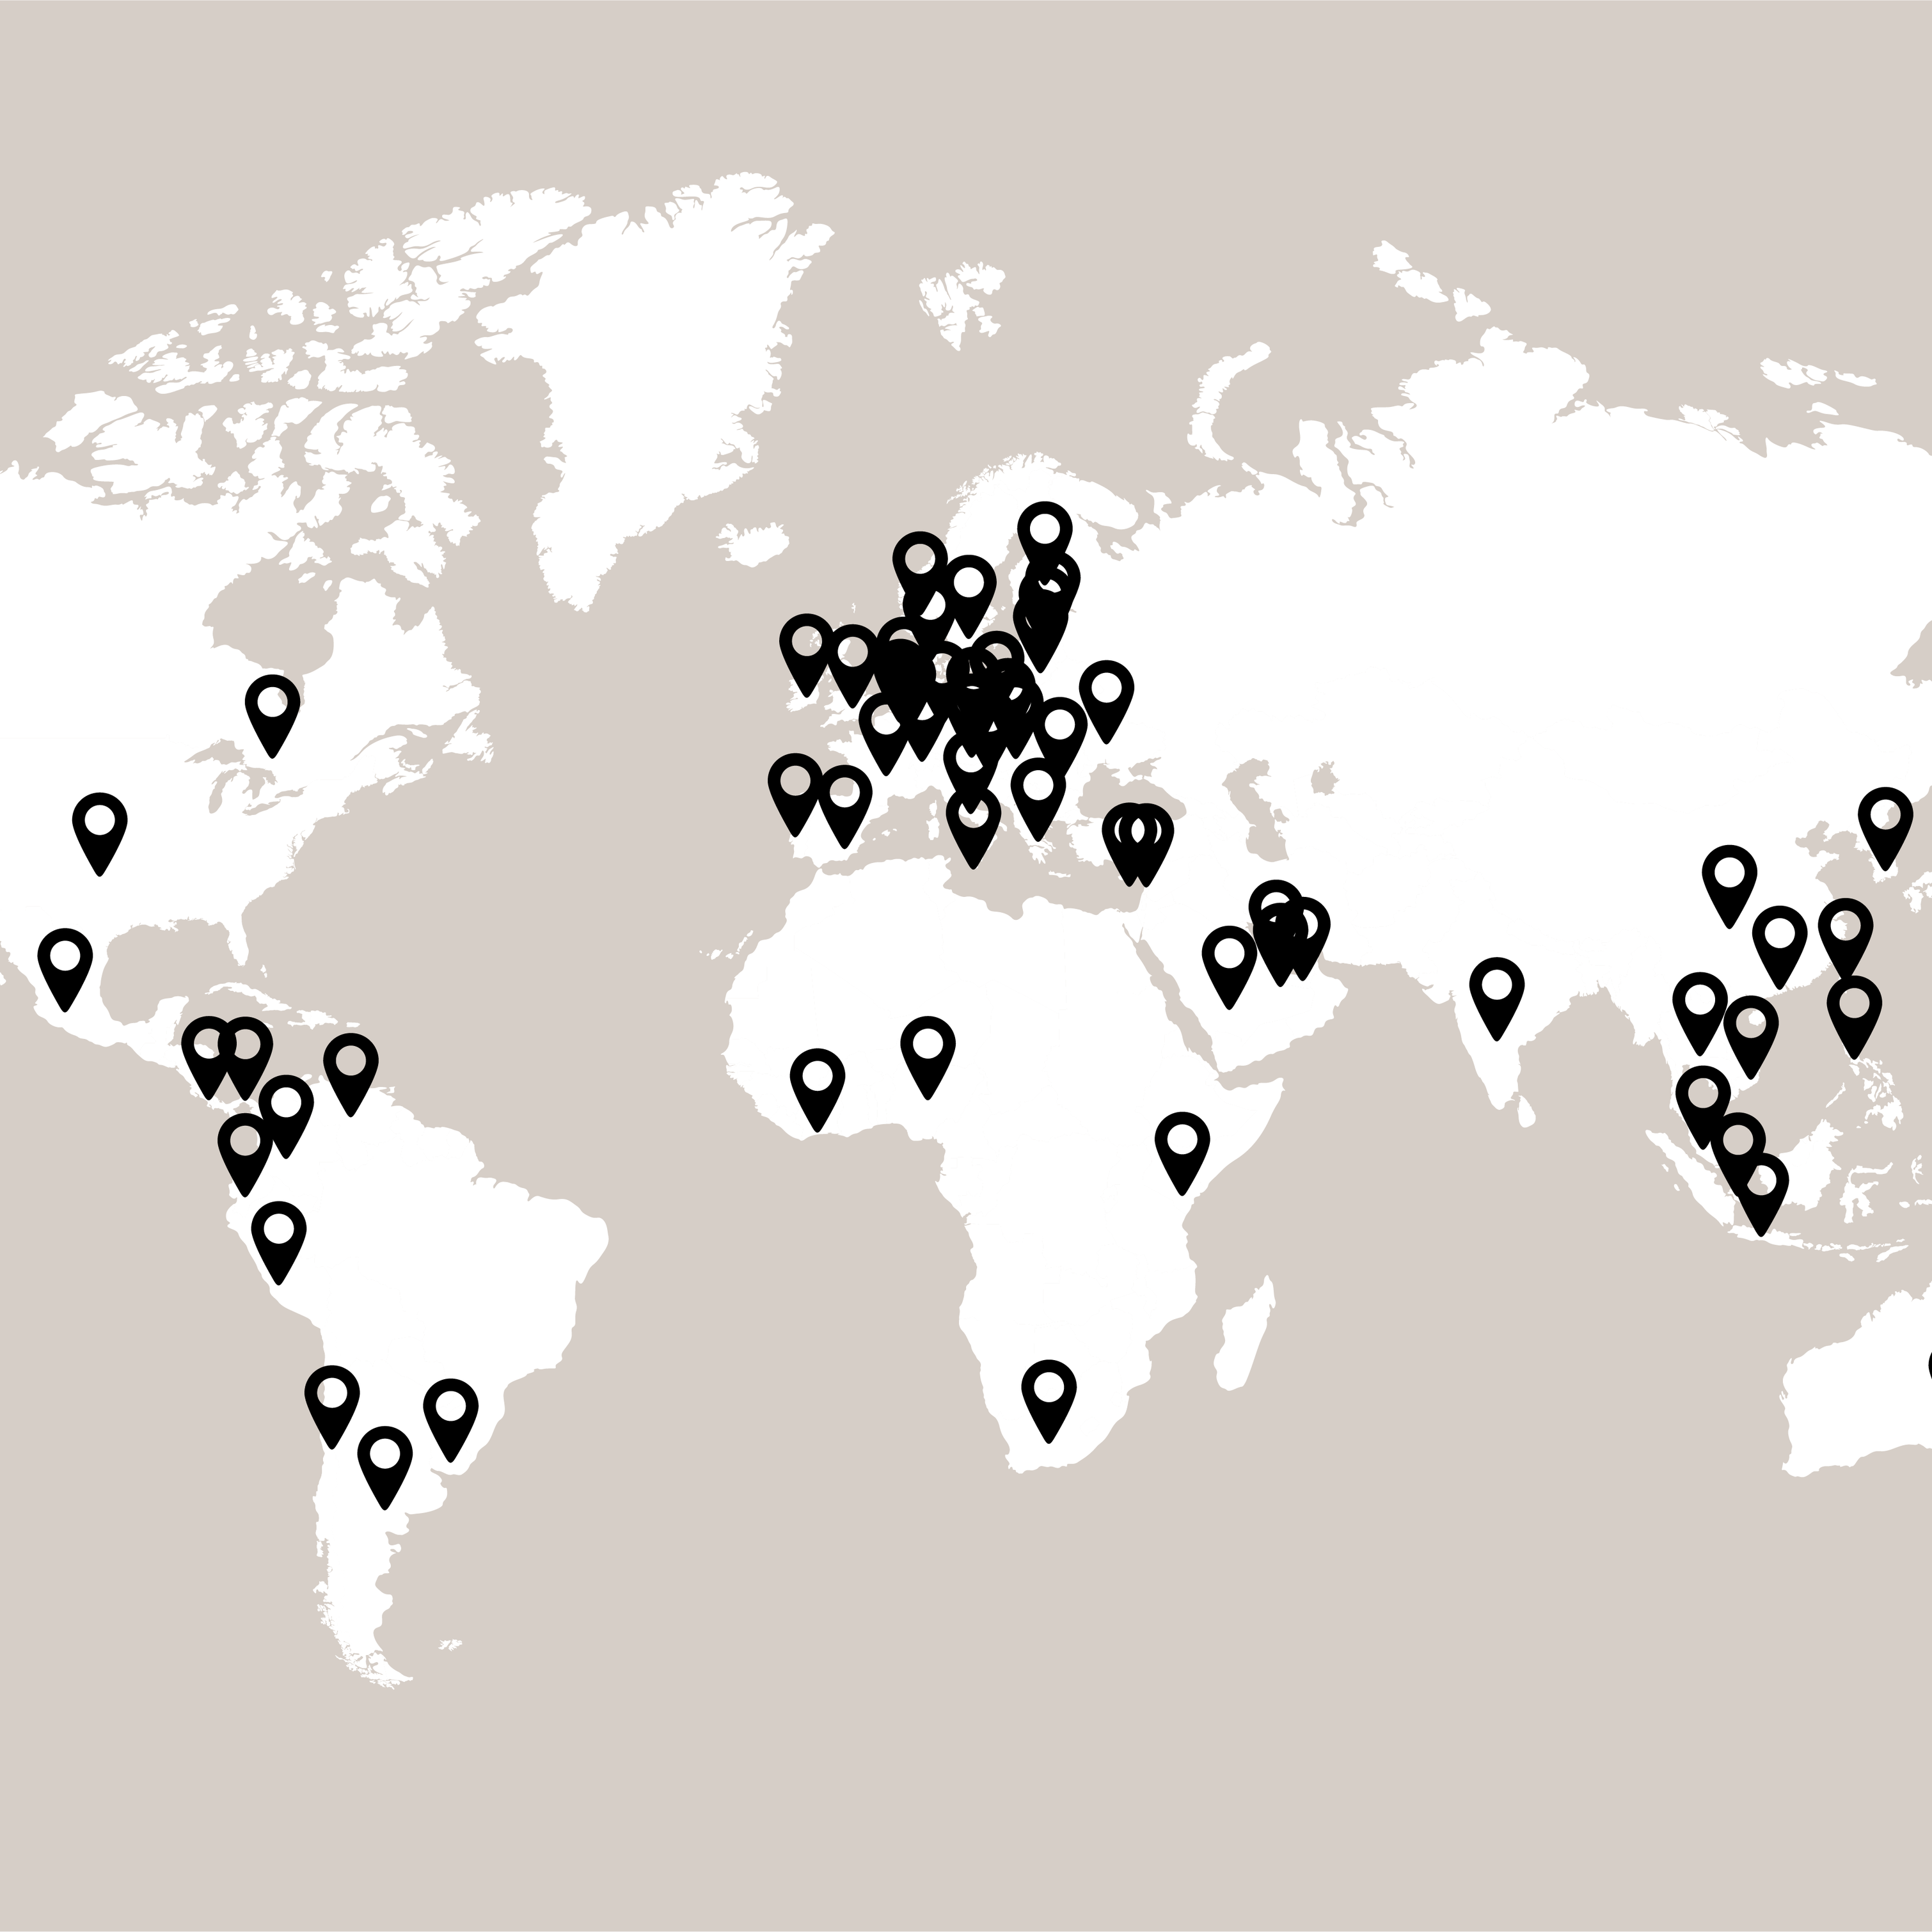 Mapa světa se značkami prodejen BoConcept po celém světě.